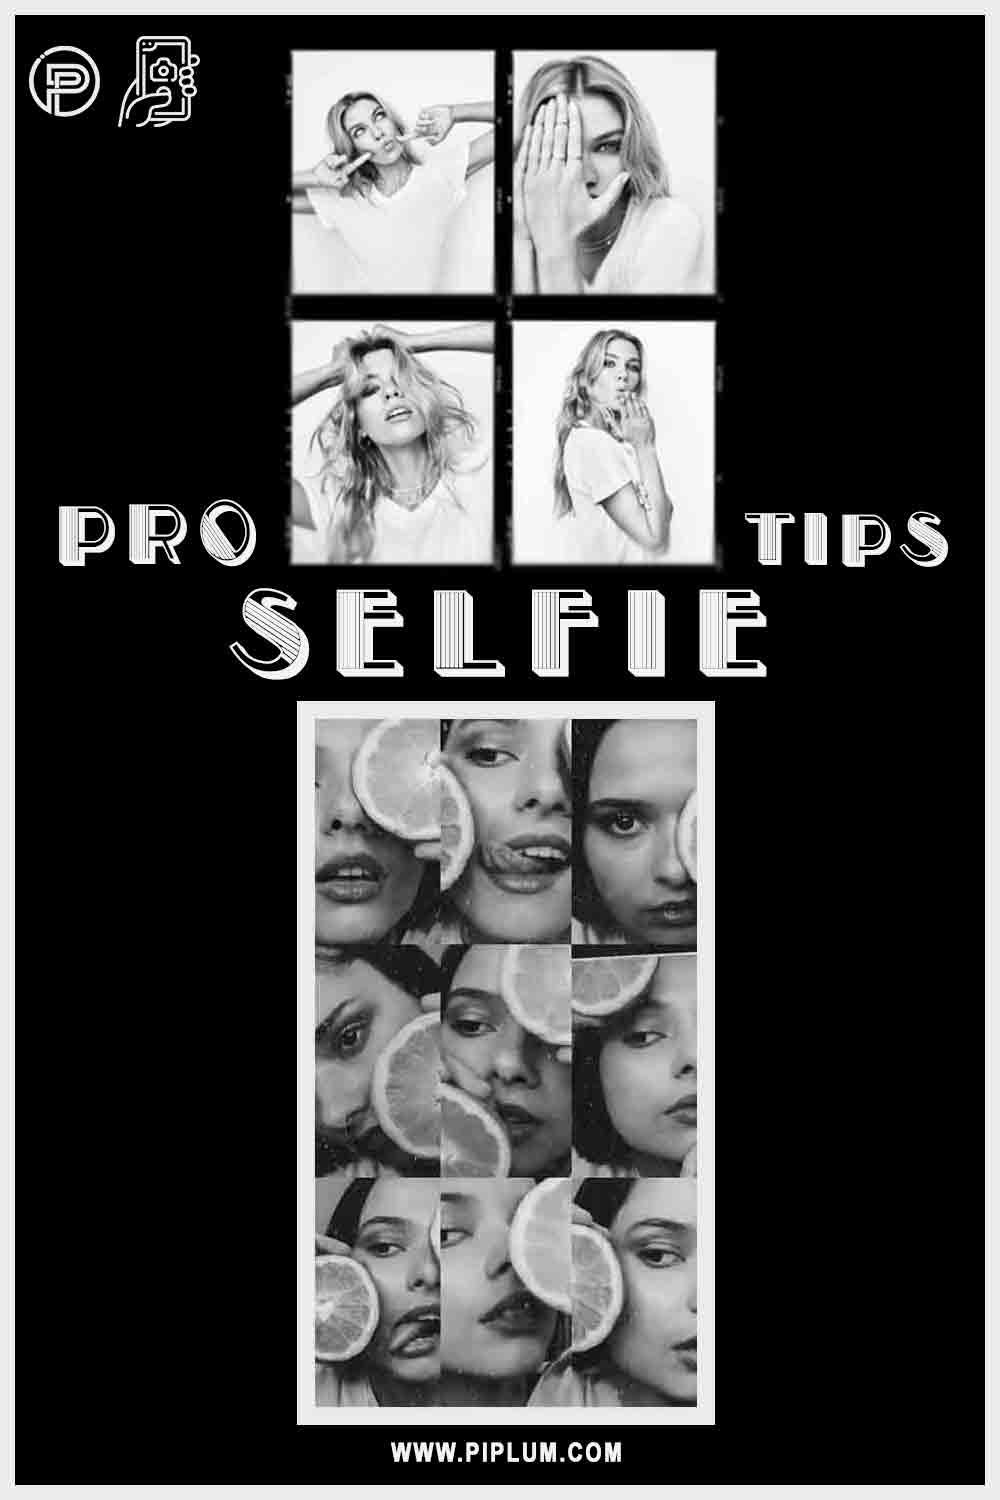 pro-selfie-tips-for-women-poster